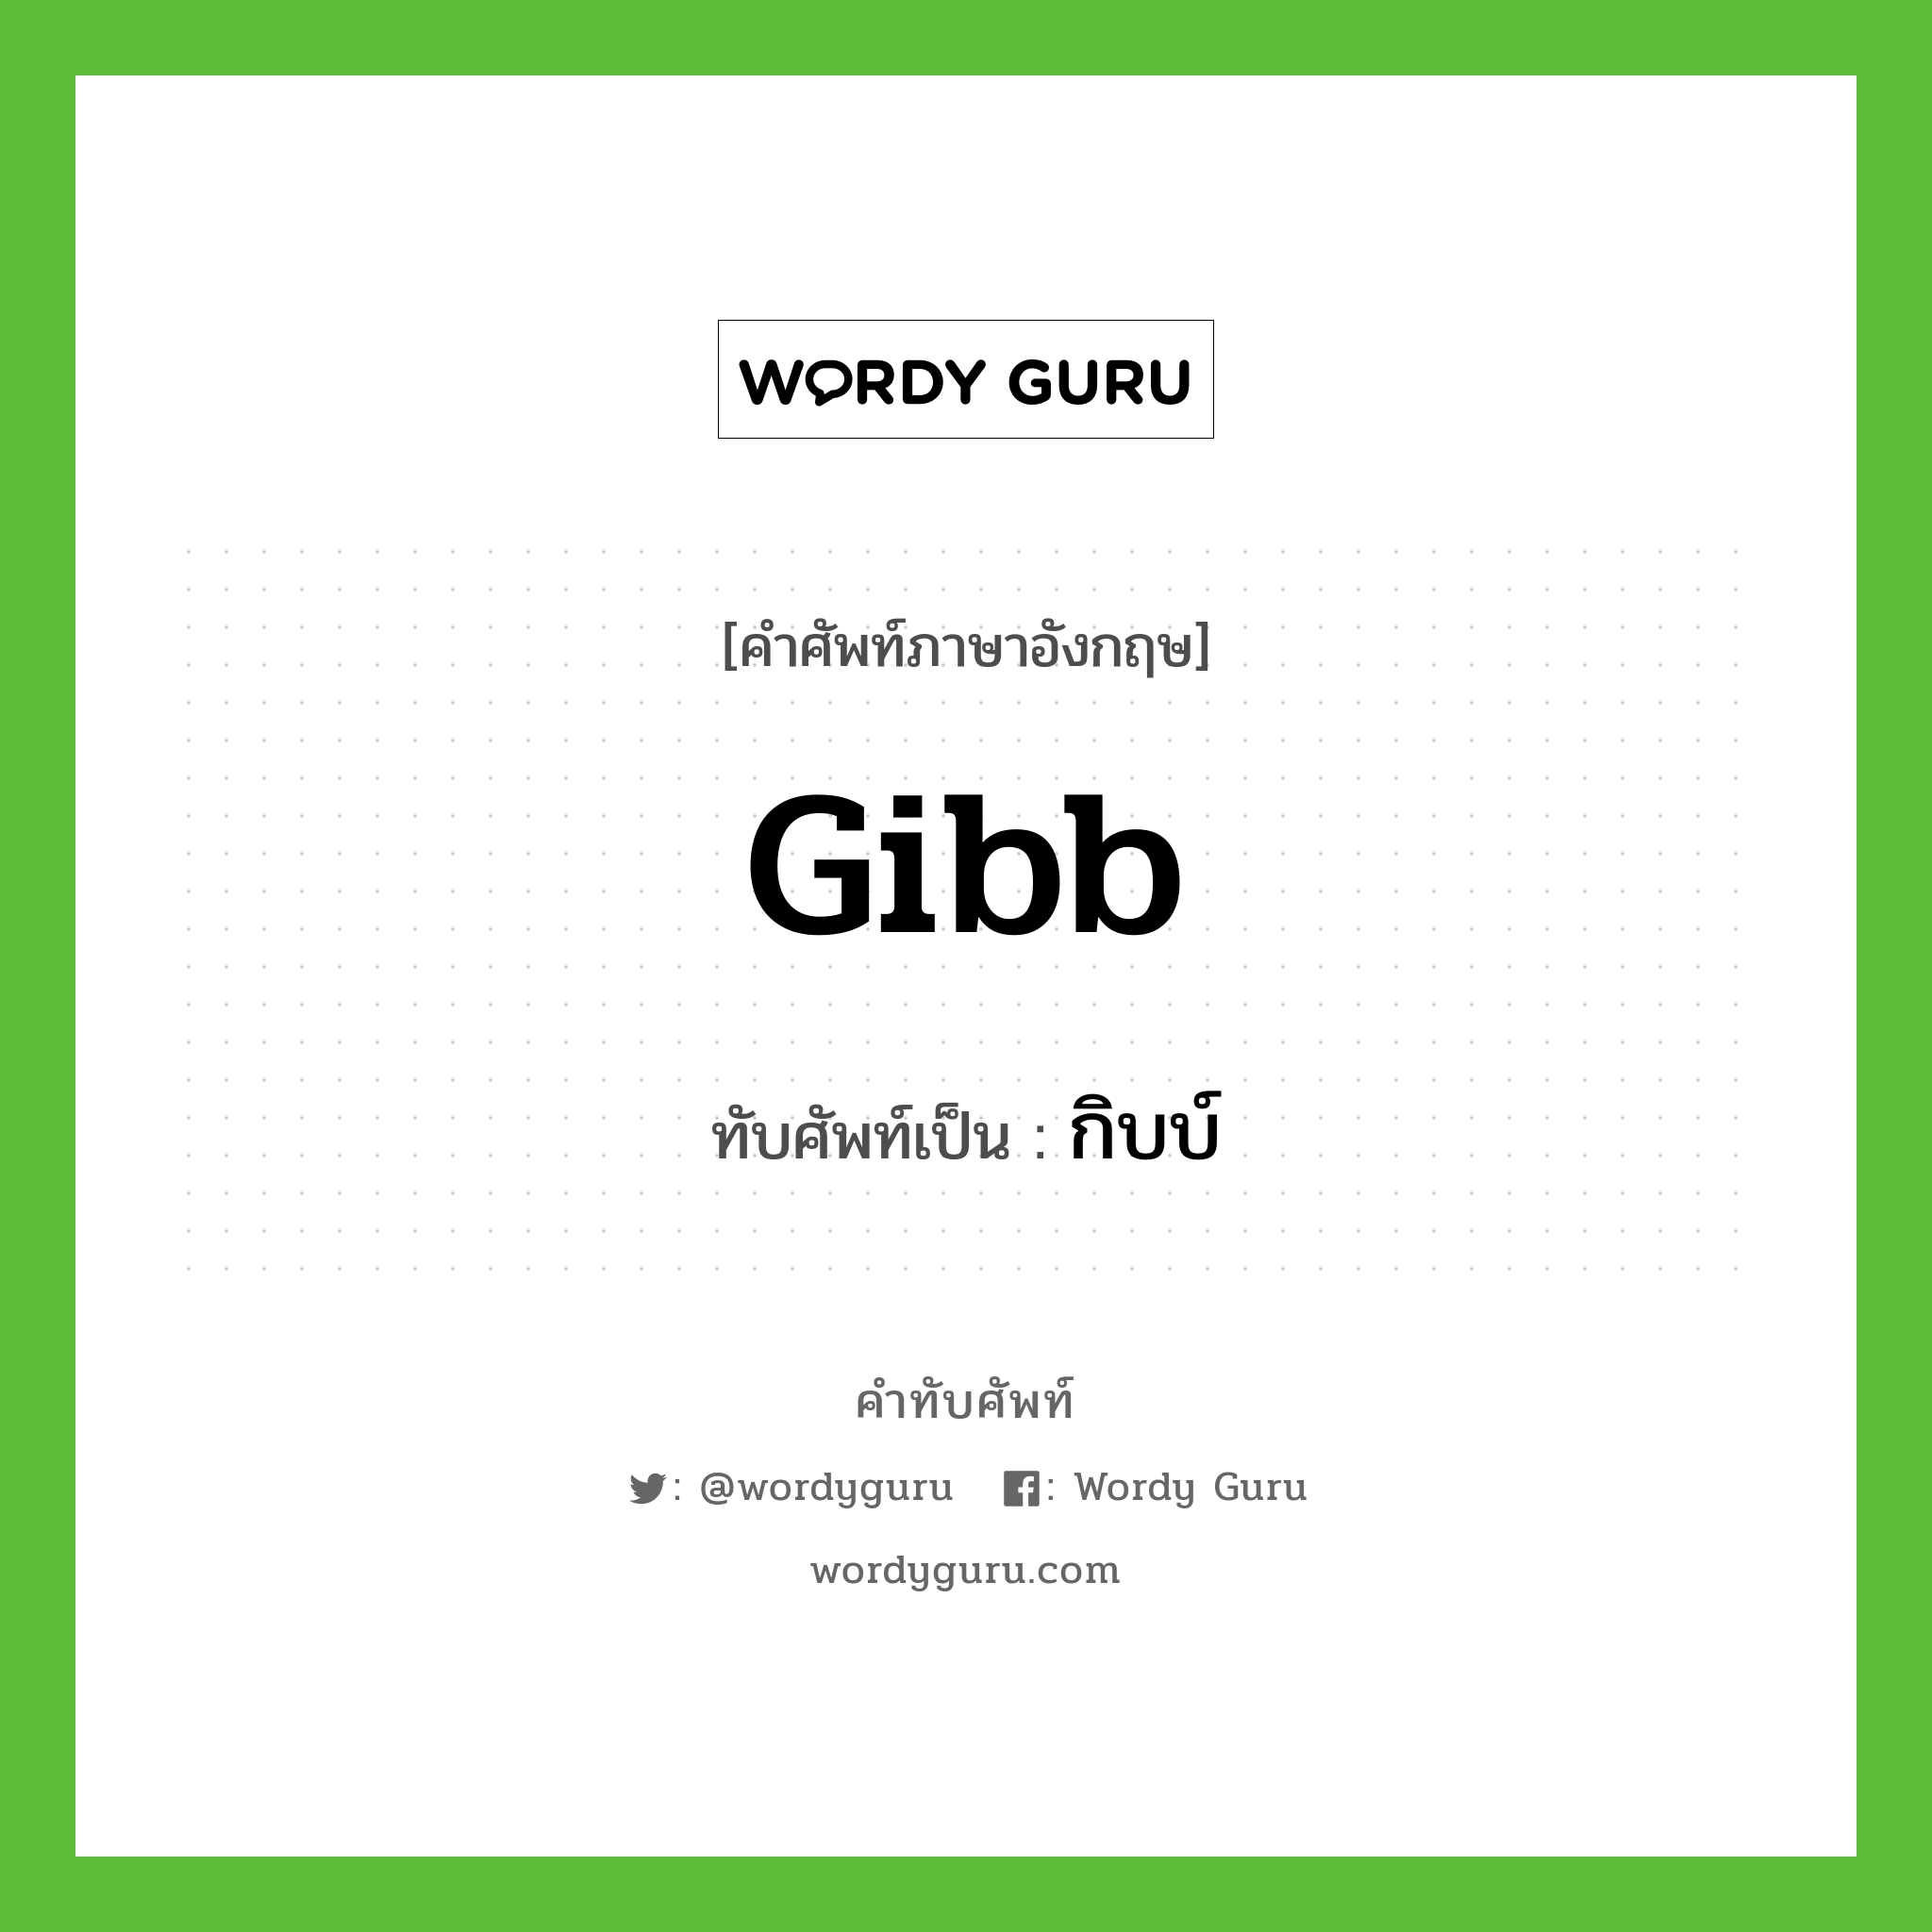 Gibb เขียนเป็นคำไทยว่าอะไร?, คำศัพท์ภาษาอังกฤษ Gibb ทับศัพท์เป็น กิบบ์